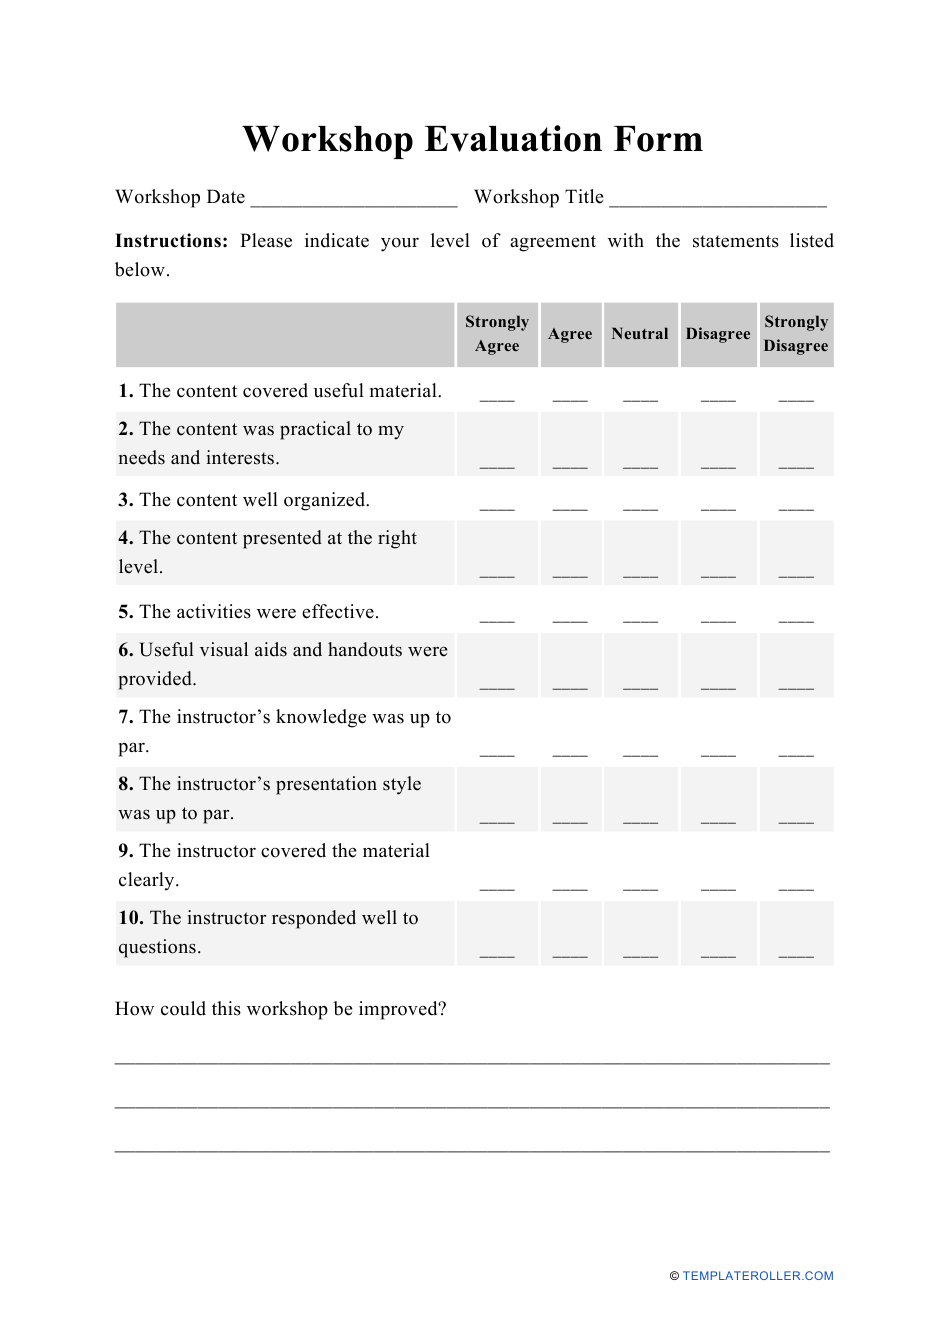 Workshop Evaluation Form Download Printable PDF 